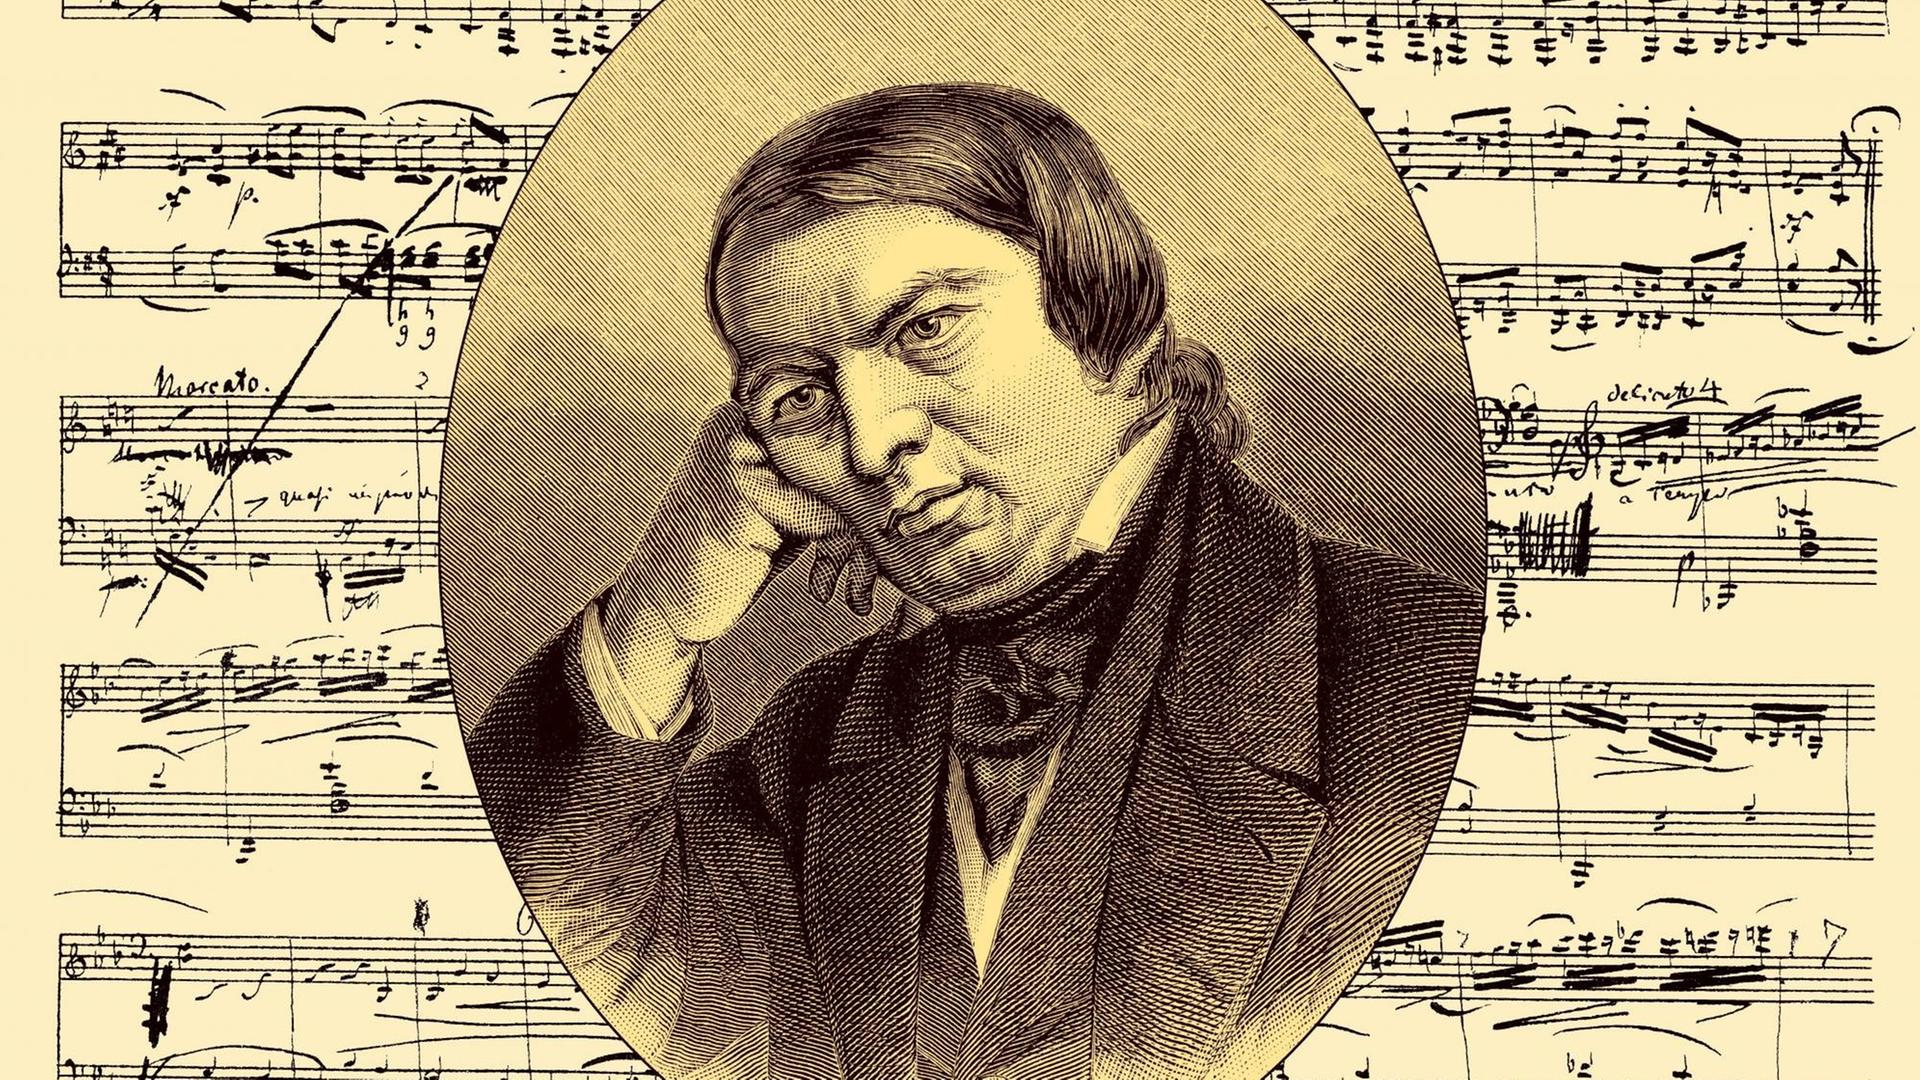 Ein Litografie- Porträt Robert Schumanns um 1888 auf einer historischen Noten-Handschrift seiner Sonate Nr. 1 Op. 2 Porträt Robert Schumanns auf einer historischen Noten-Handschrift seiner Sonate Nr. 1 - um 1988